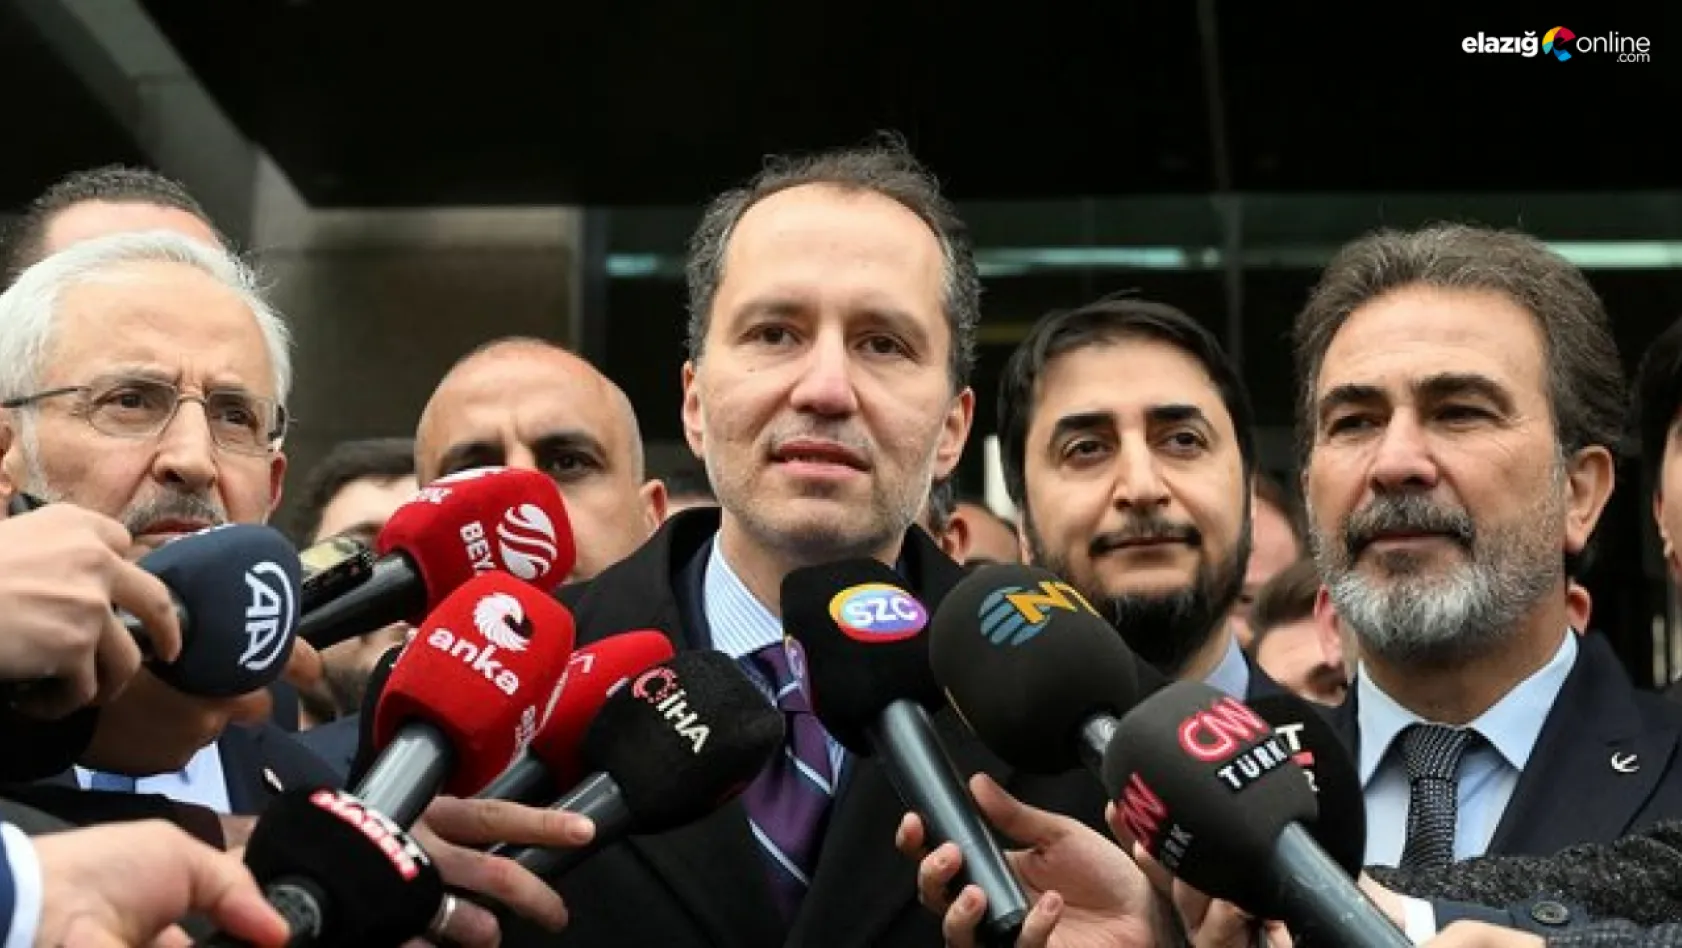 Cumhur İttifakı'na katılan YRP Genel Başkanı Fatih Erbakan'dan ilk açıklama geldi